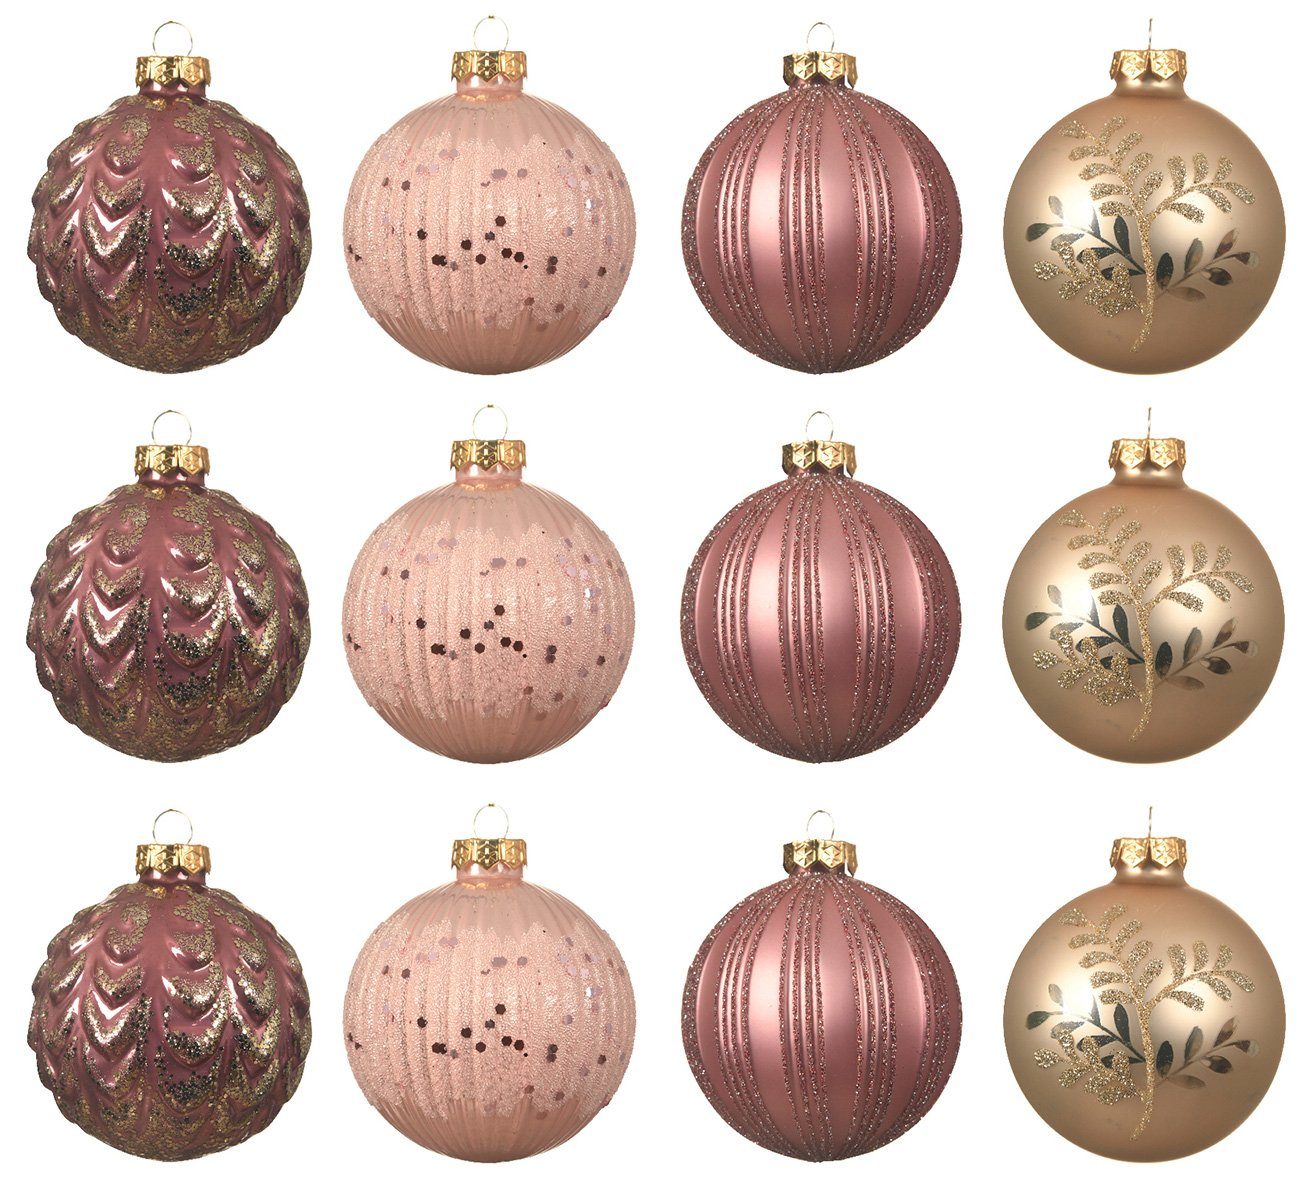 Decoris season decorations Weihnachtsbaumkugel, Weihnachtskugeln Glas 8cm mit Muster / Streifen 12er Set rosa / beige